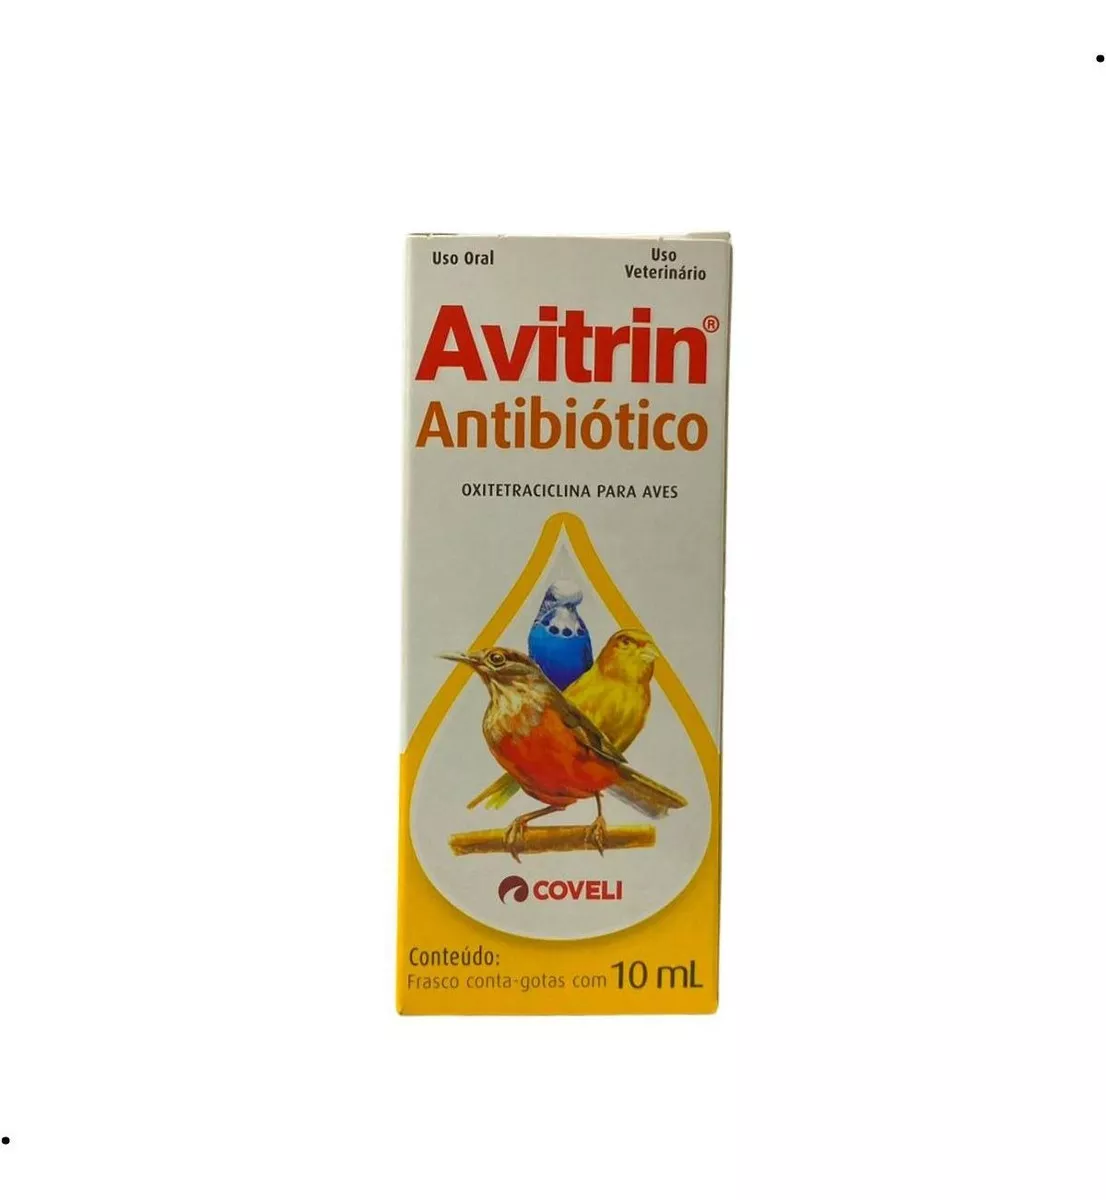 Primeira imagem para pesquisa de norkill antibiotico aves